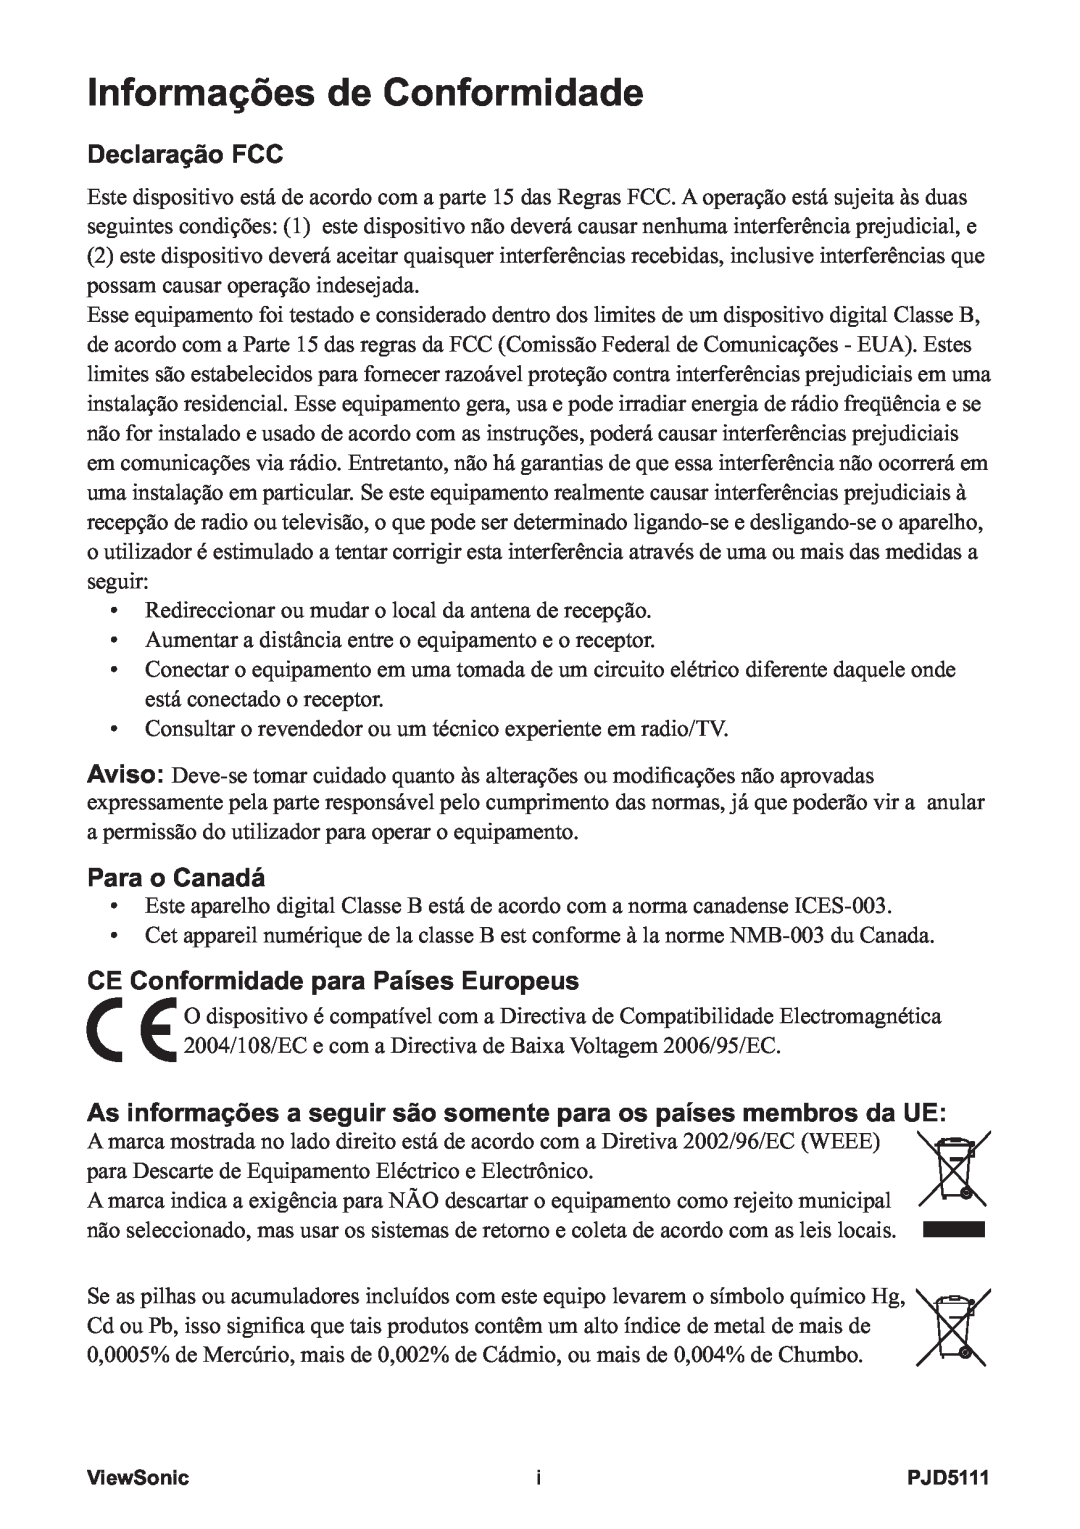 ViewSonic VS12440 manual Informações de Conformidade, Declaração FCC, Para o Canadá, CE Conformidade para Países Europeus 